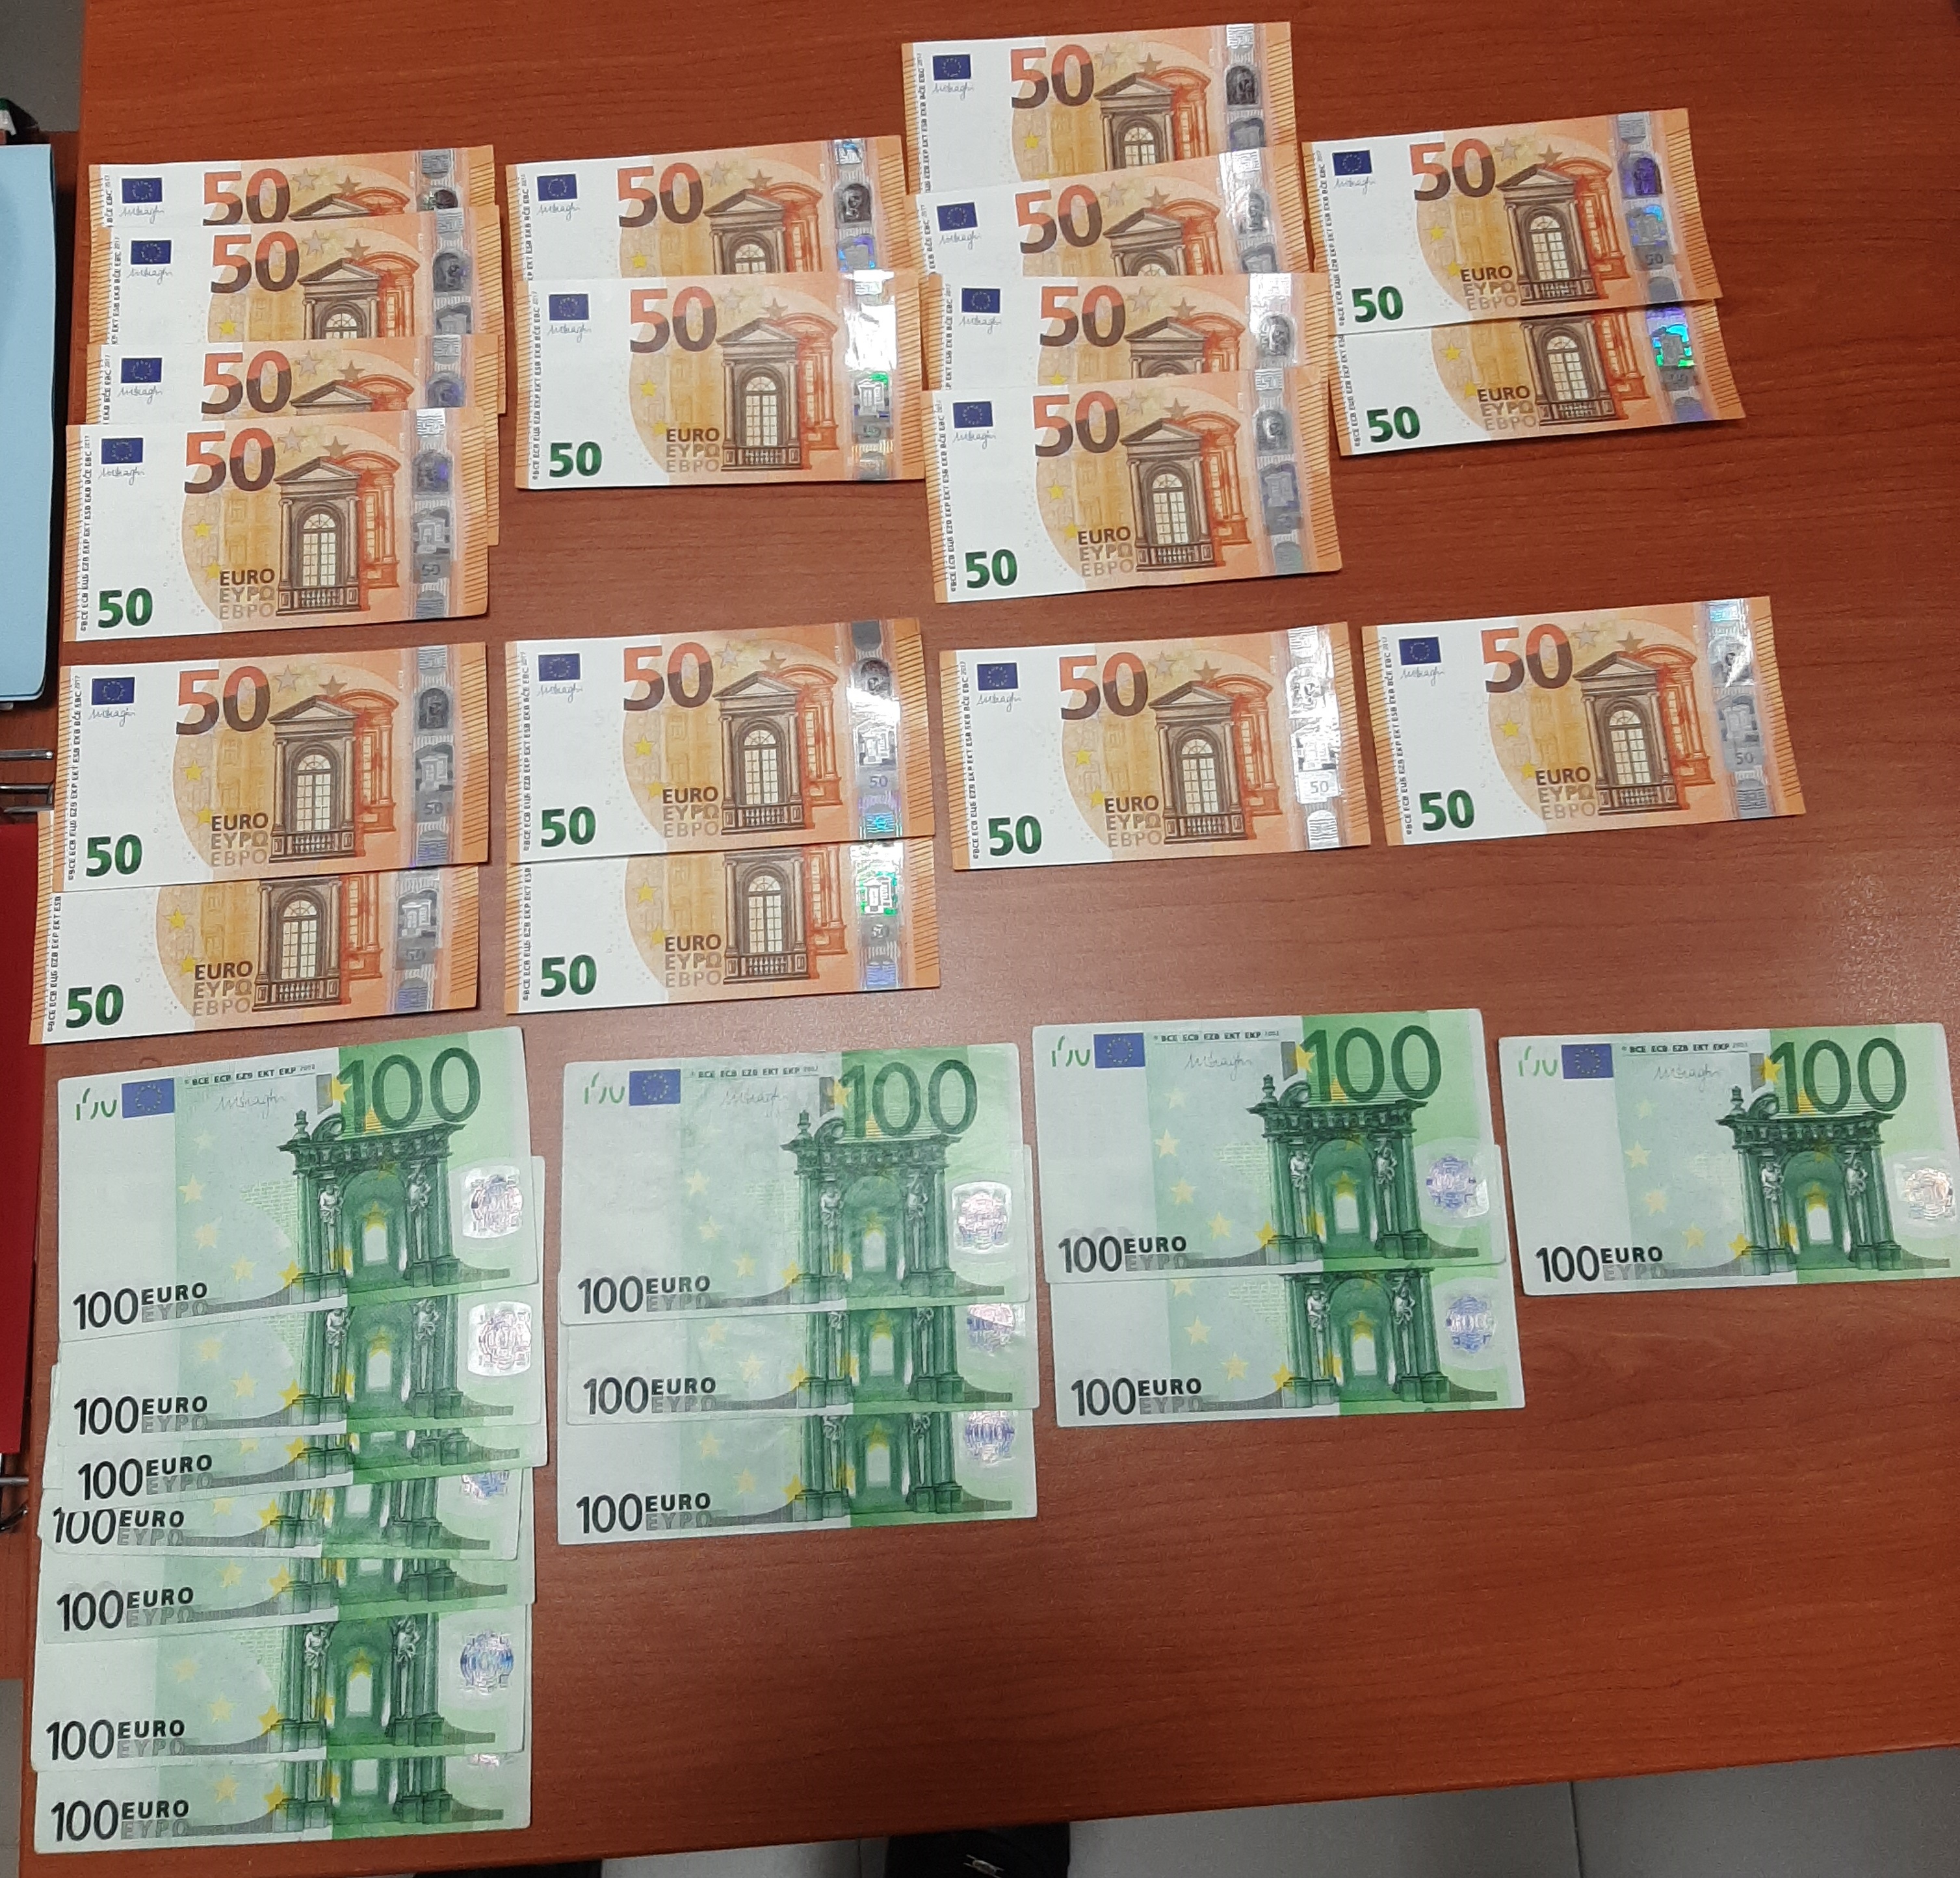 La Policía Local de Armilla detiene a un individuo por intentar pagar consumiciones con billetes falsos